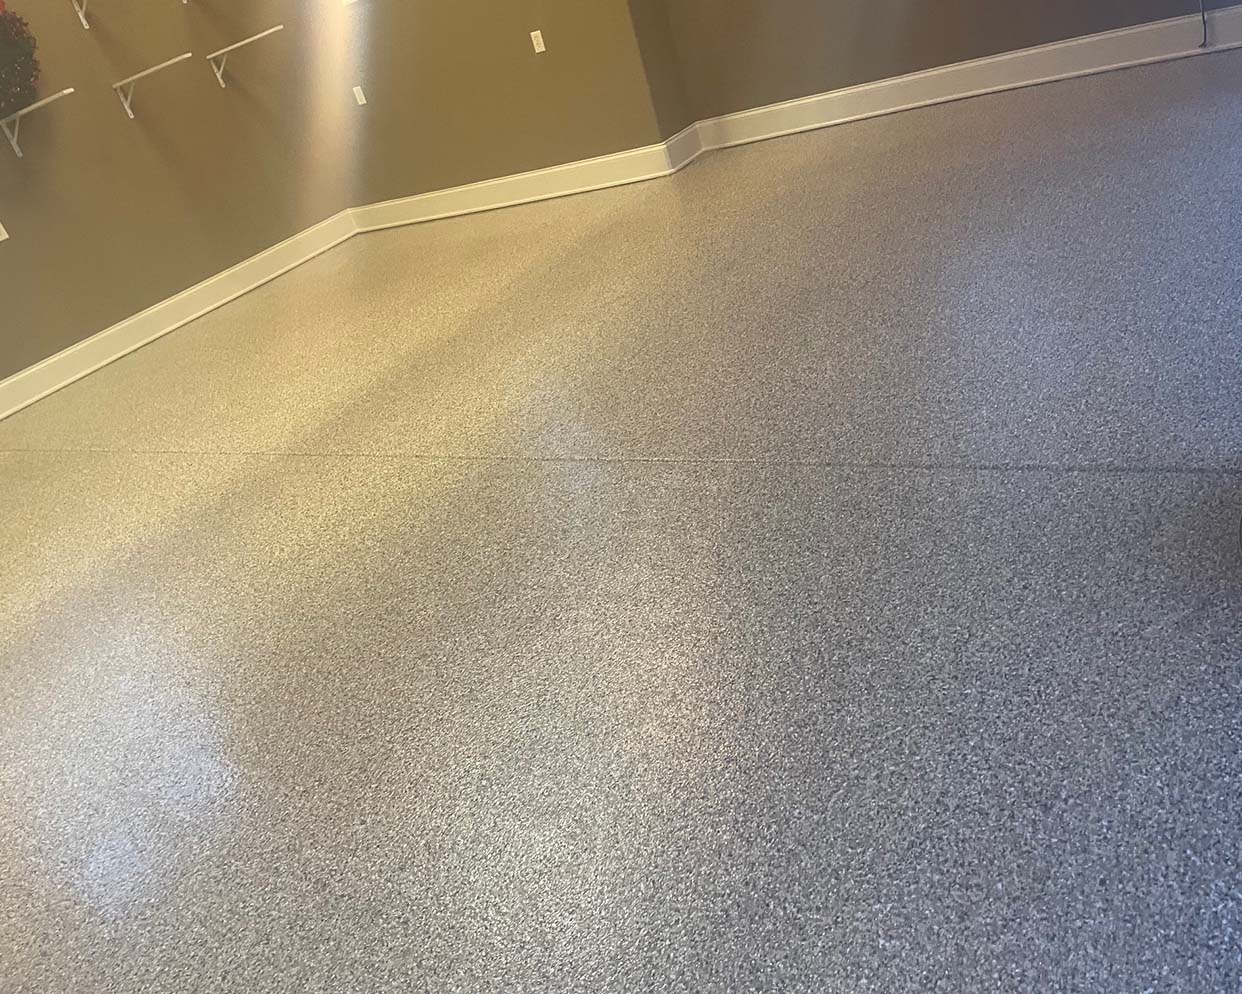 garage floor after poly aspartic coating